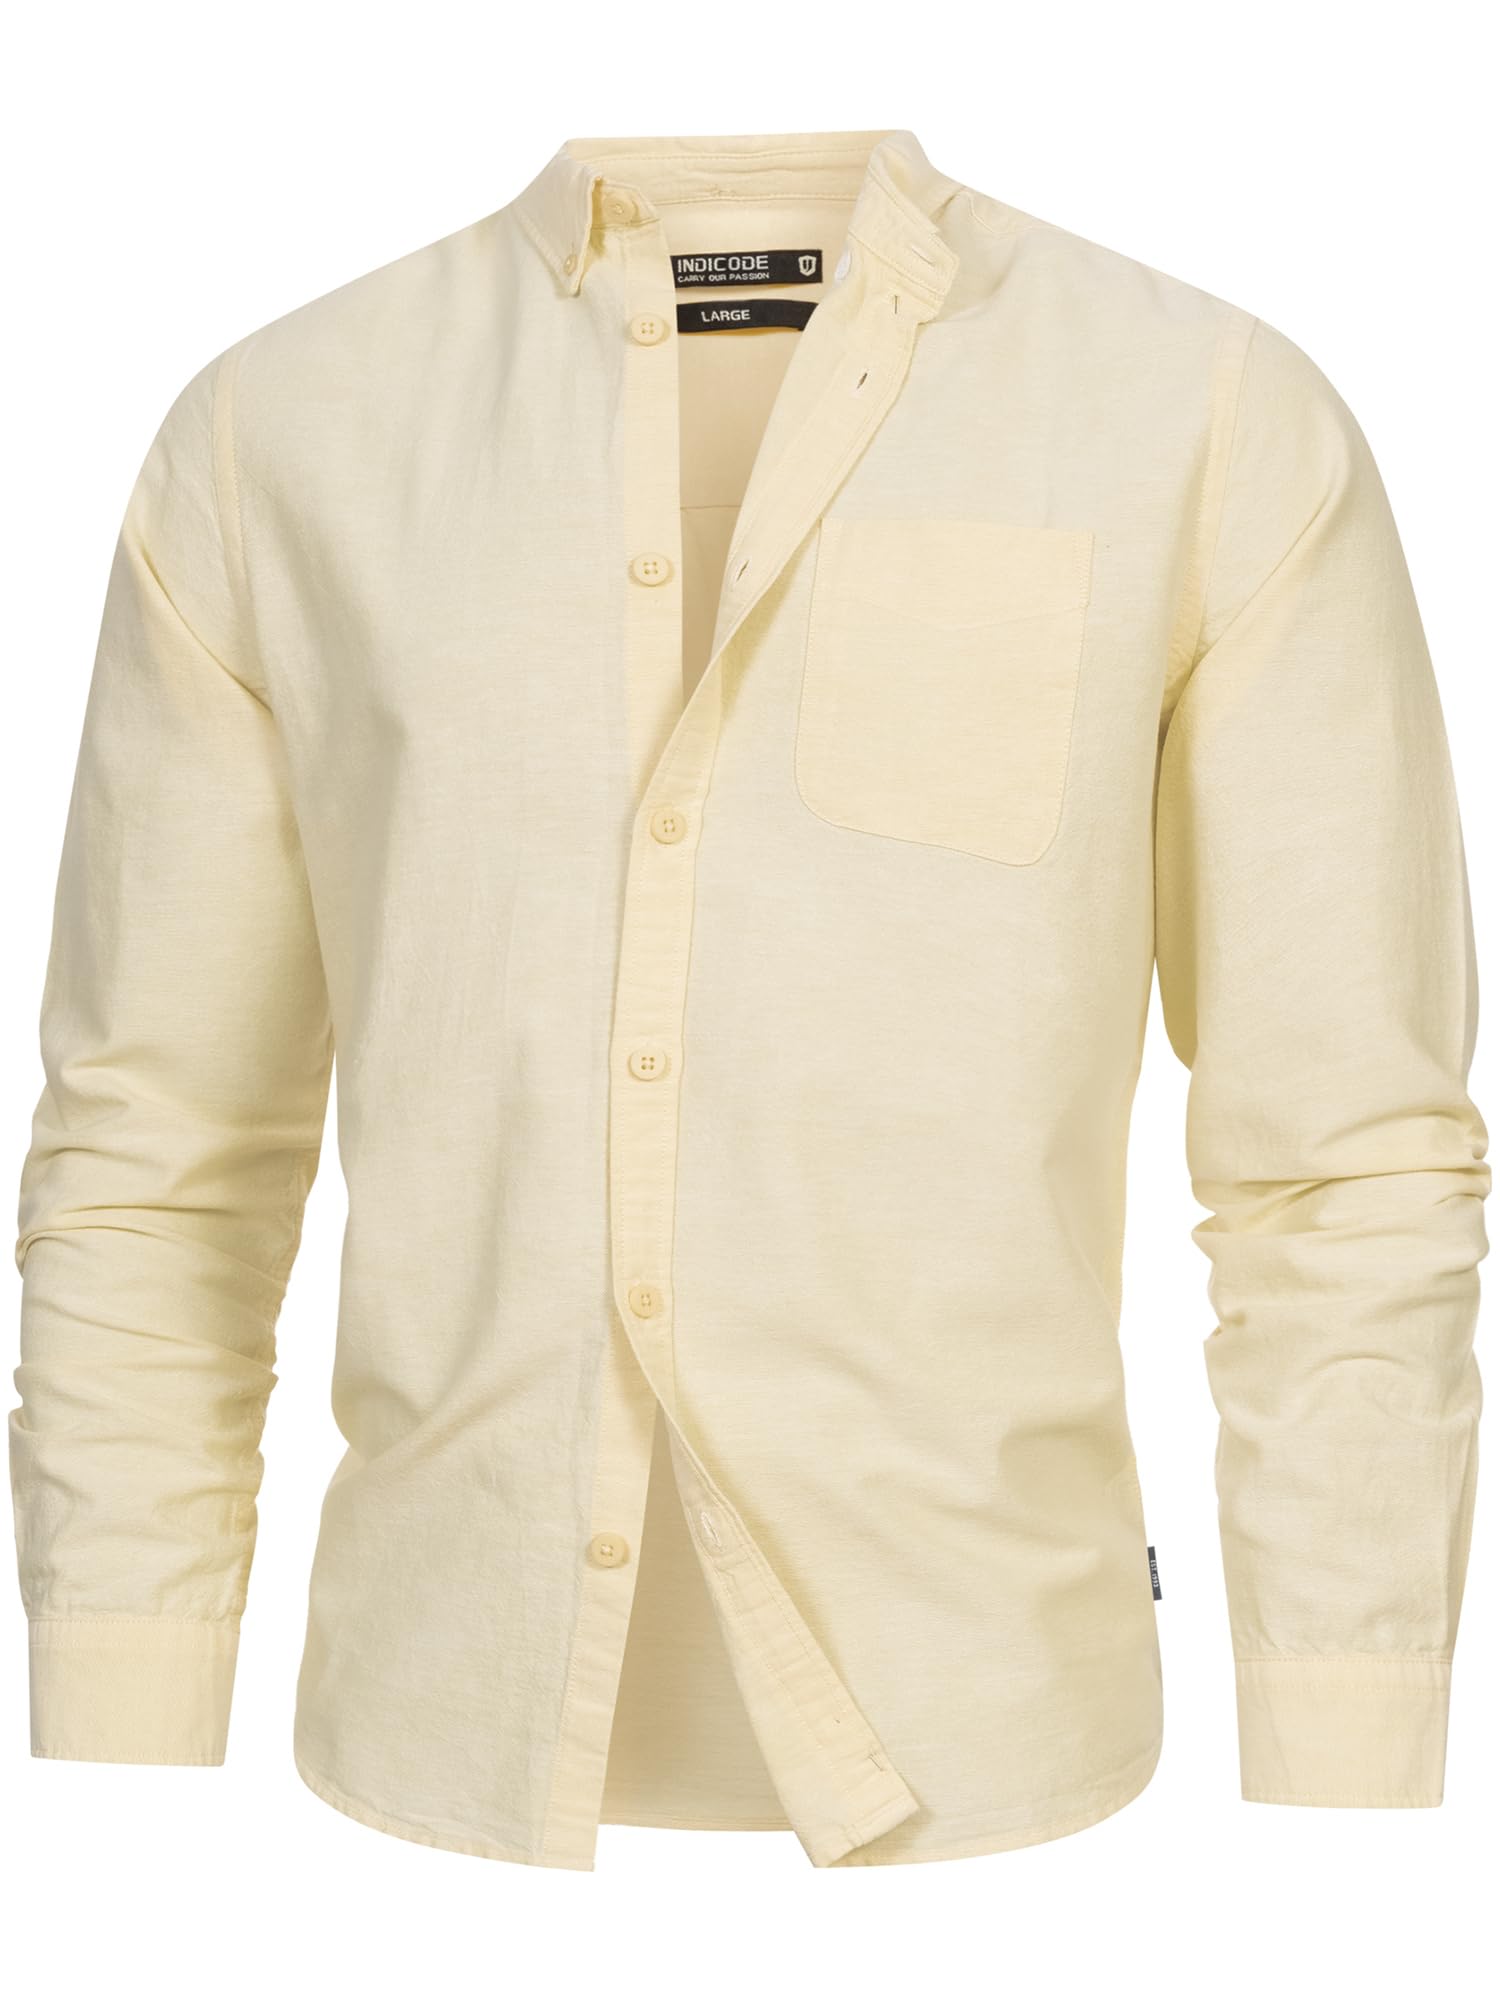 Indicode Herren Kepner Hemd mit Brust-Tasche aus Baumwolle | Herrenhemd für Männer Anise Flower XL